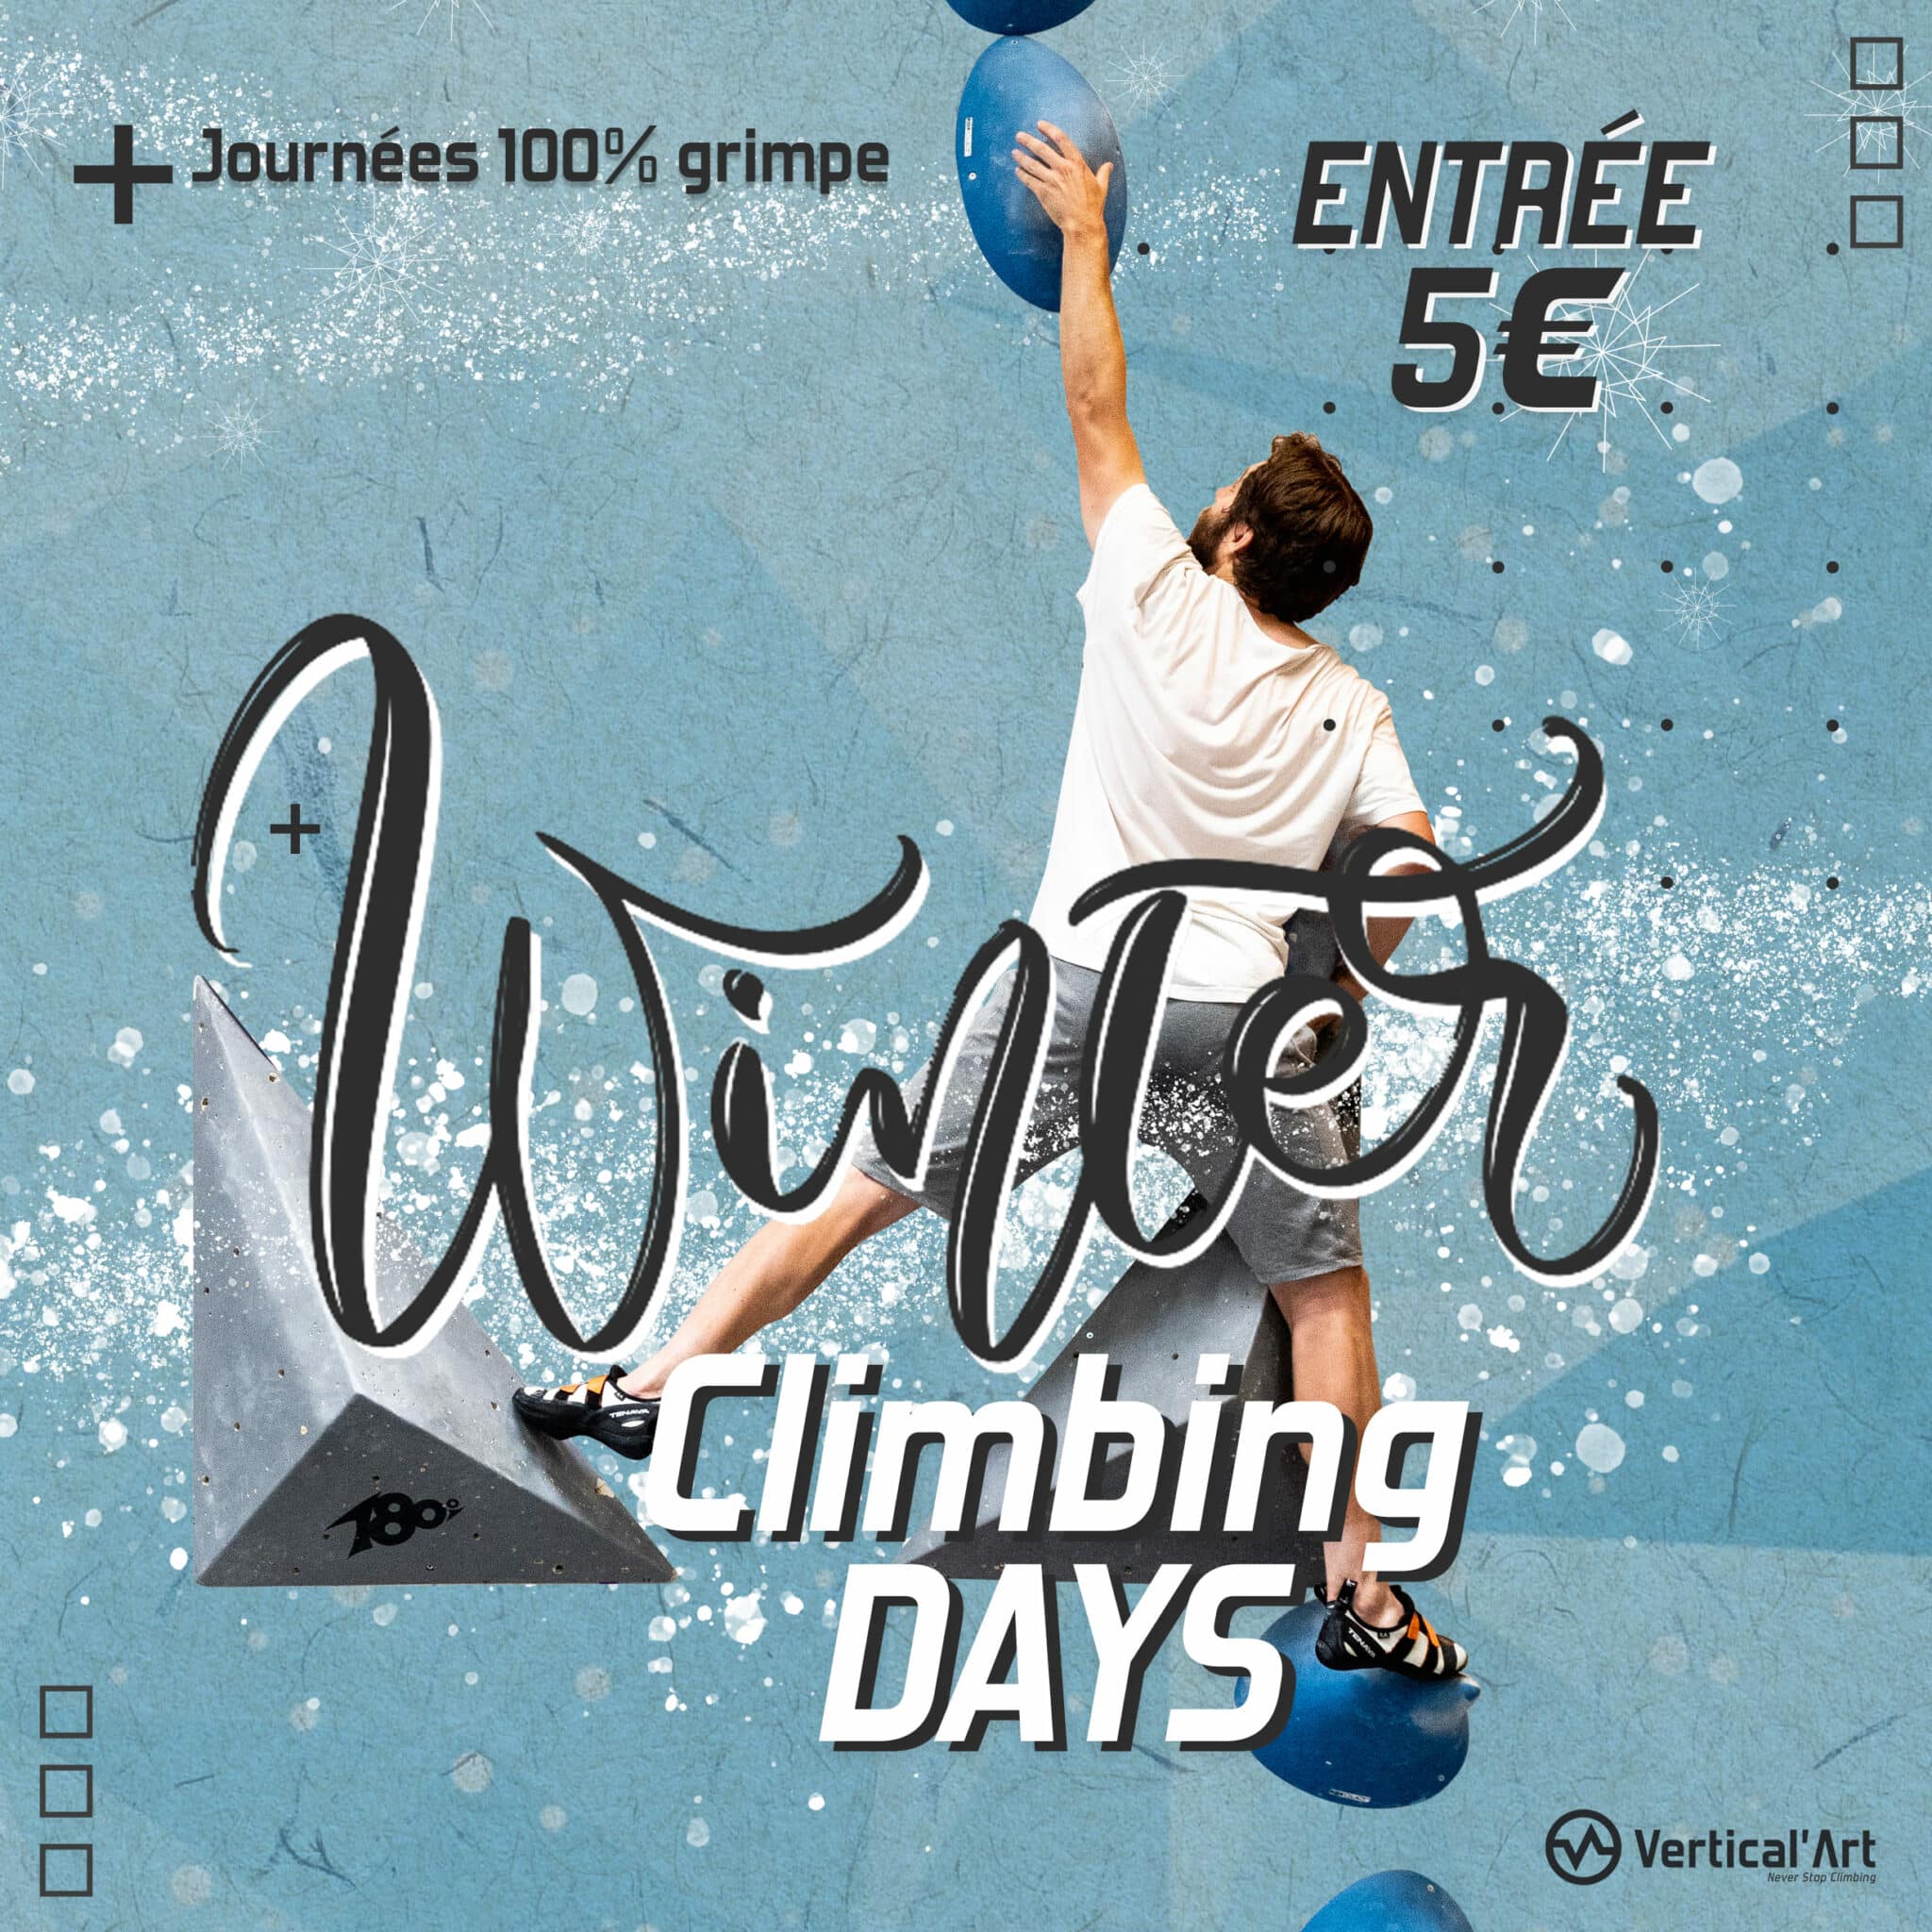 Winter Climbing Days à Vertical’Art Lille, escalade gratuite pour tous pendant les vacances d'hiver